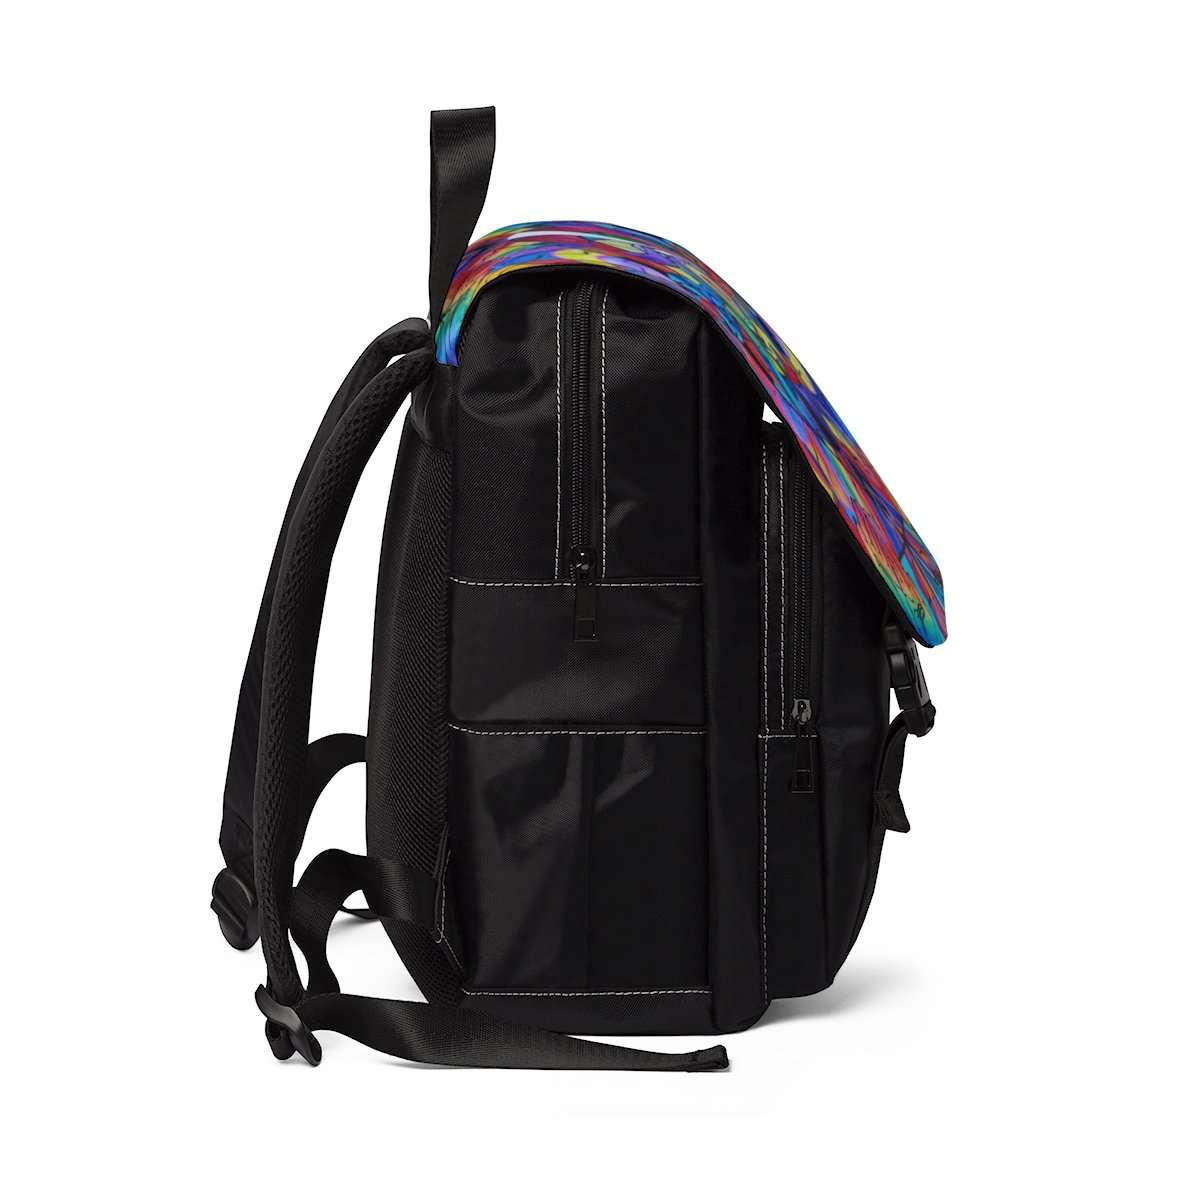 Come Together - Unisex Casual Shoulder Backpack